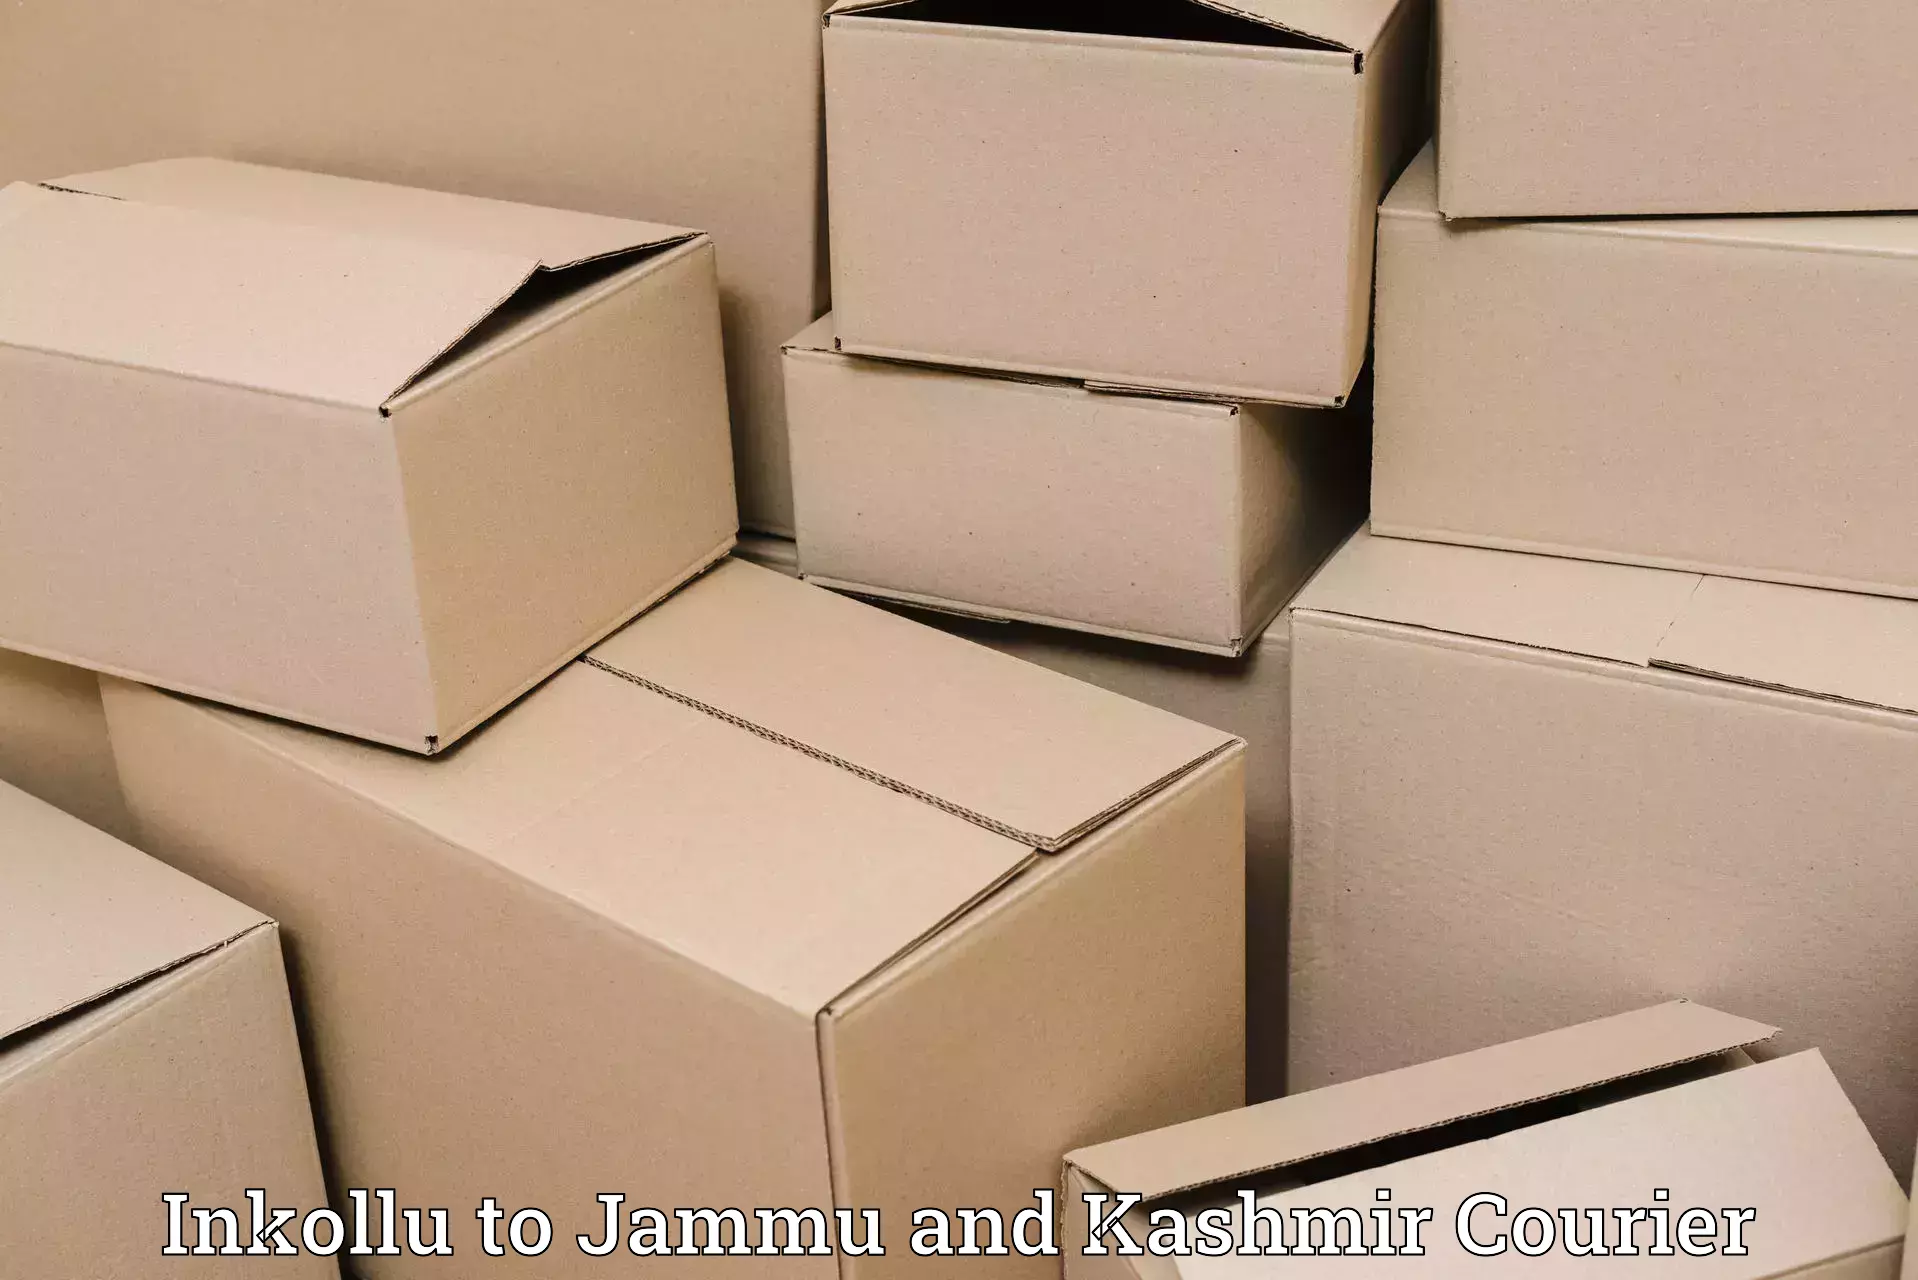 Efficient parcel service in Inkollu to Hiranagar